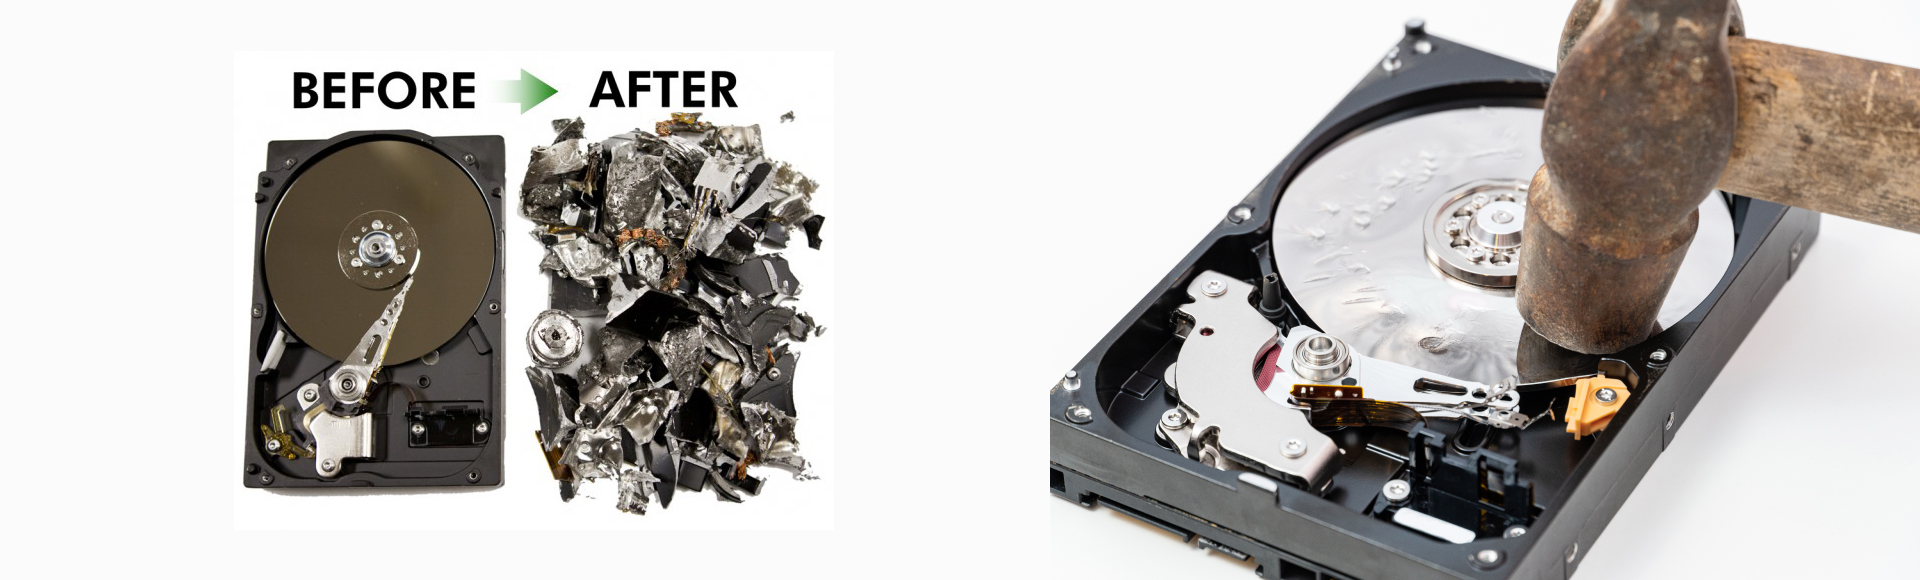 destroy a hard disk